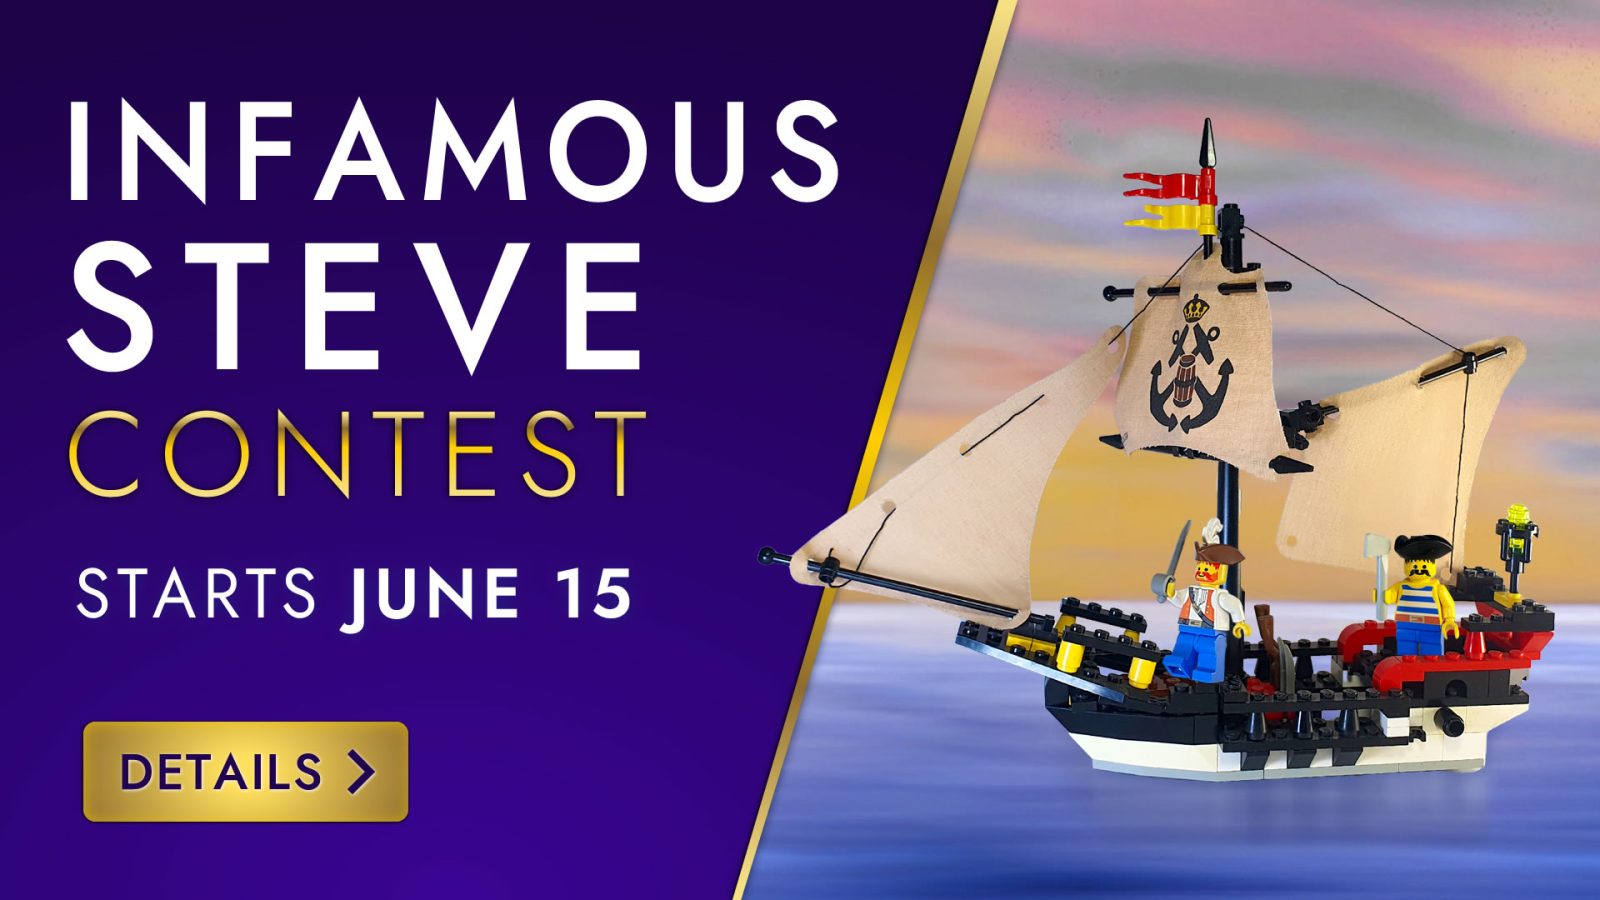 The Infamous Steve Contest commences June 15